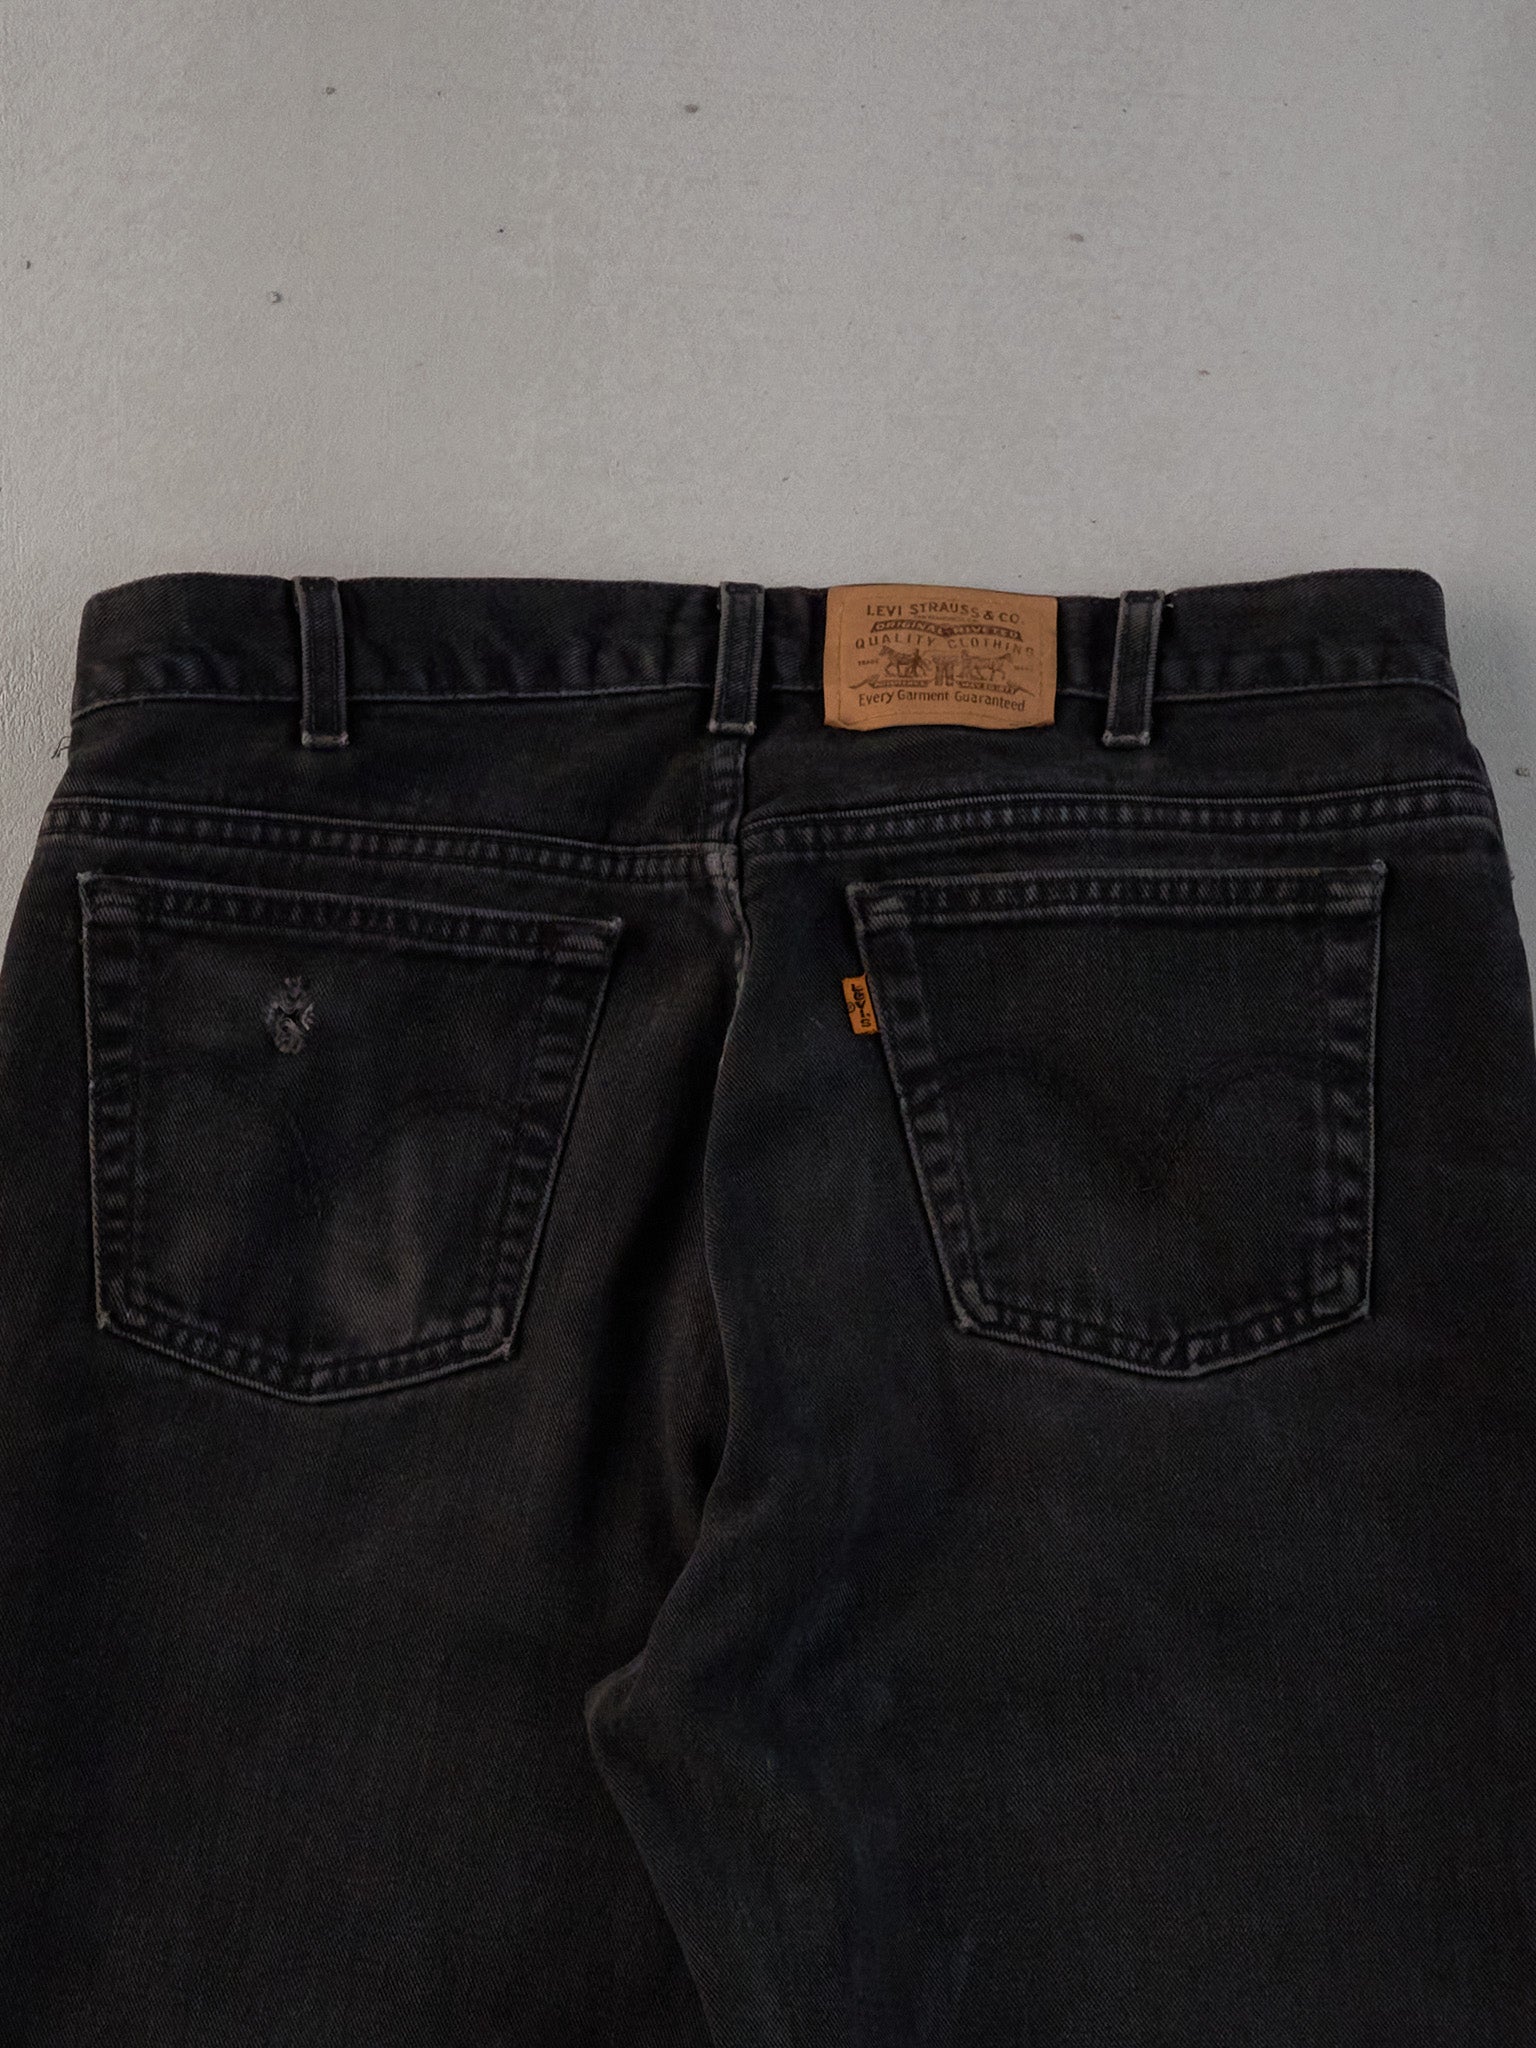 Vintage 70s Black Levi's 506 Denim Jeans (34x29)